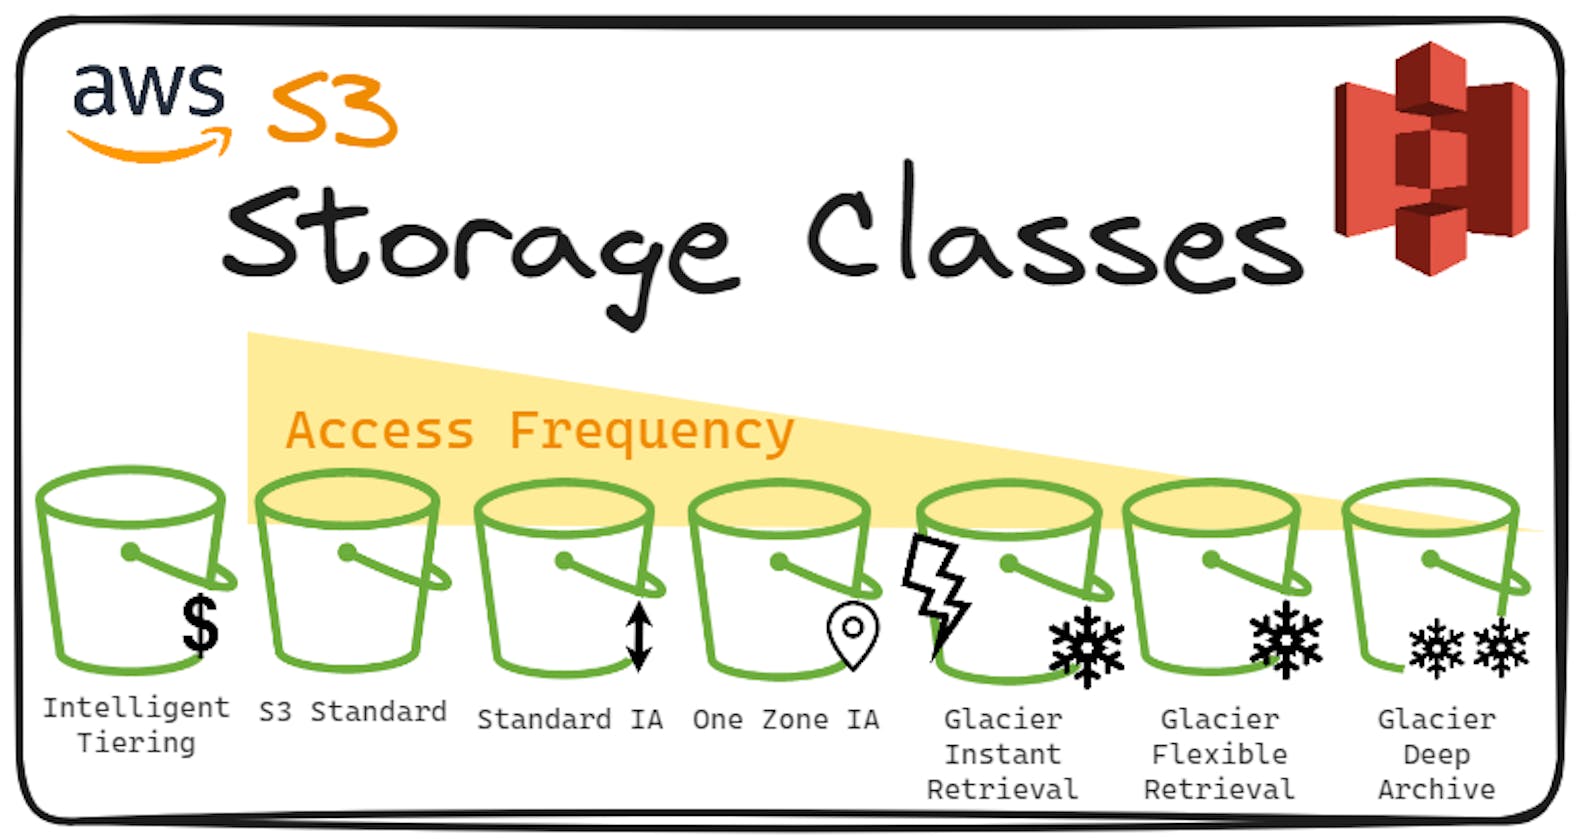 Amazon S3 – Storage Classes